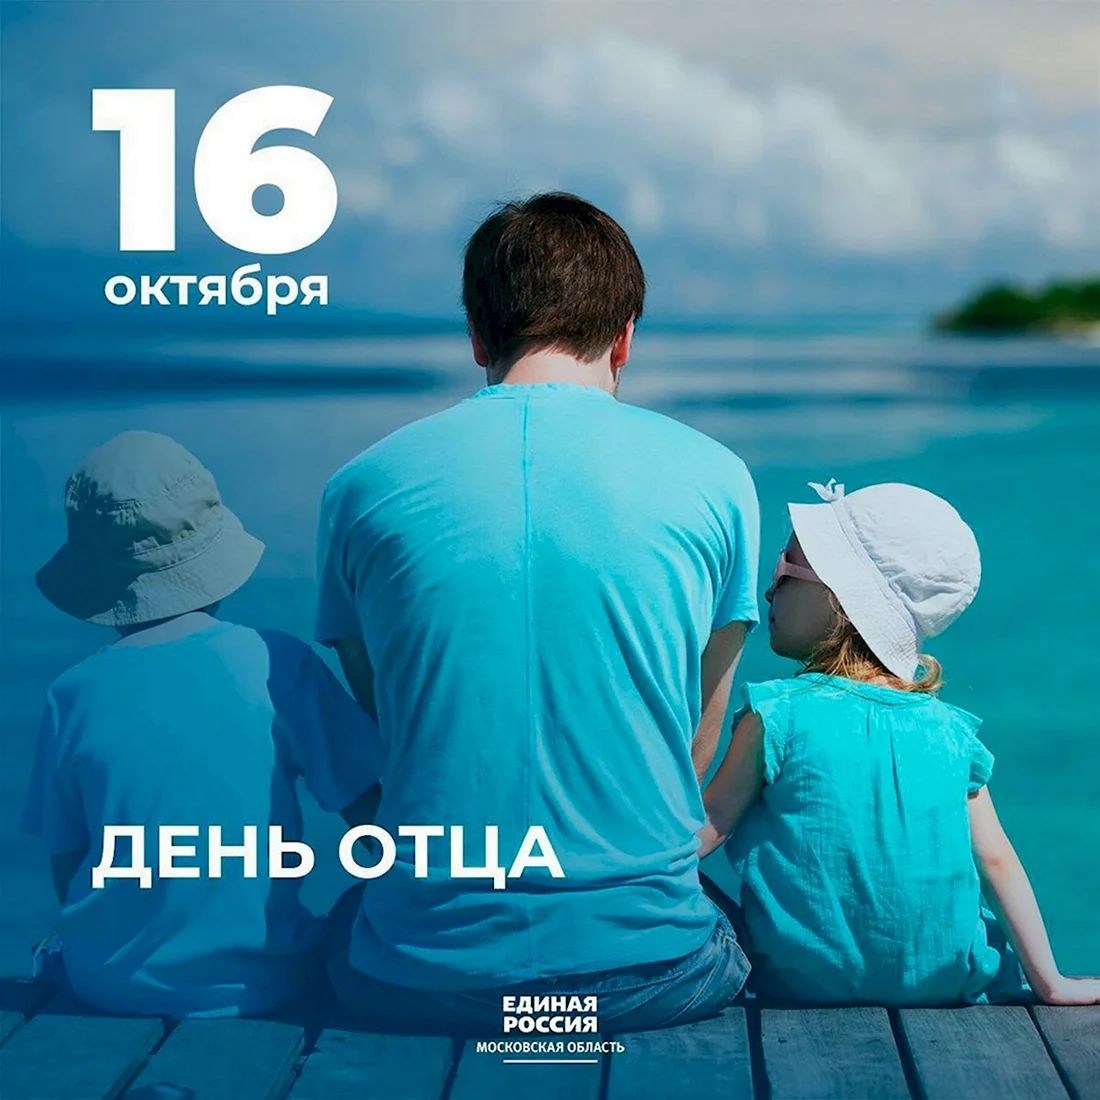 16 Октября день отца в России. Поздравление на праздник